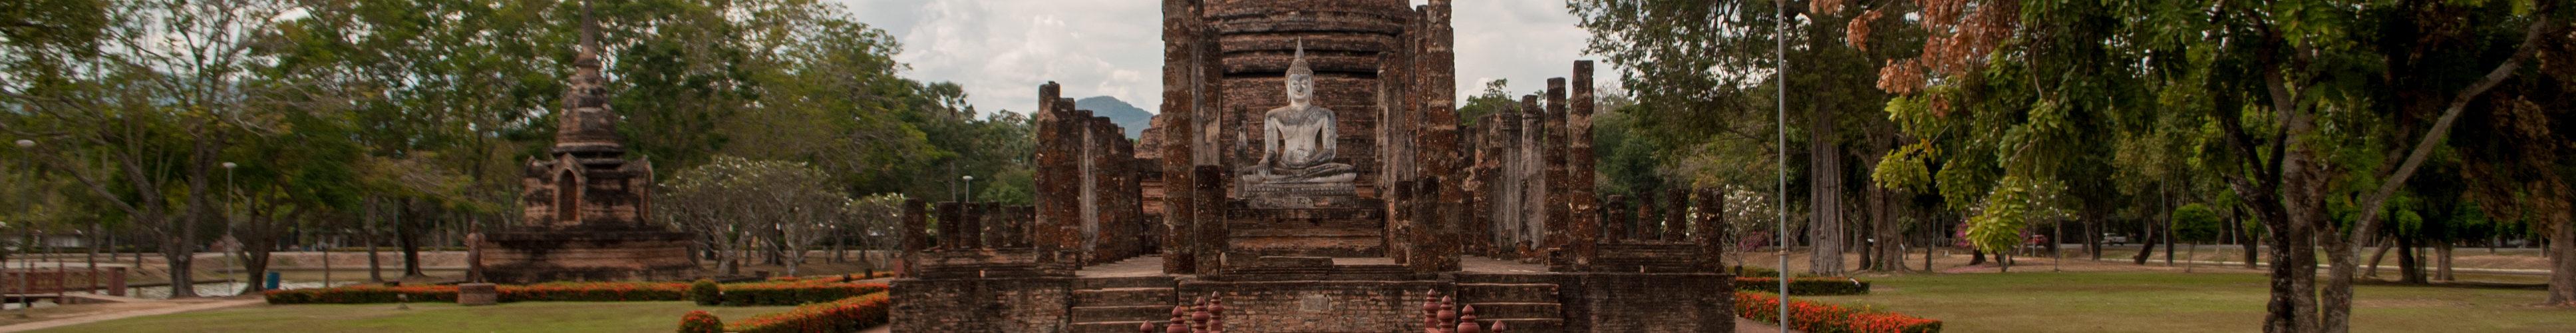 Dwie stolice, dwa królestwa. Sukhothai czy Ayutthaya? - Nieznaneścieżki.pl